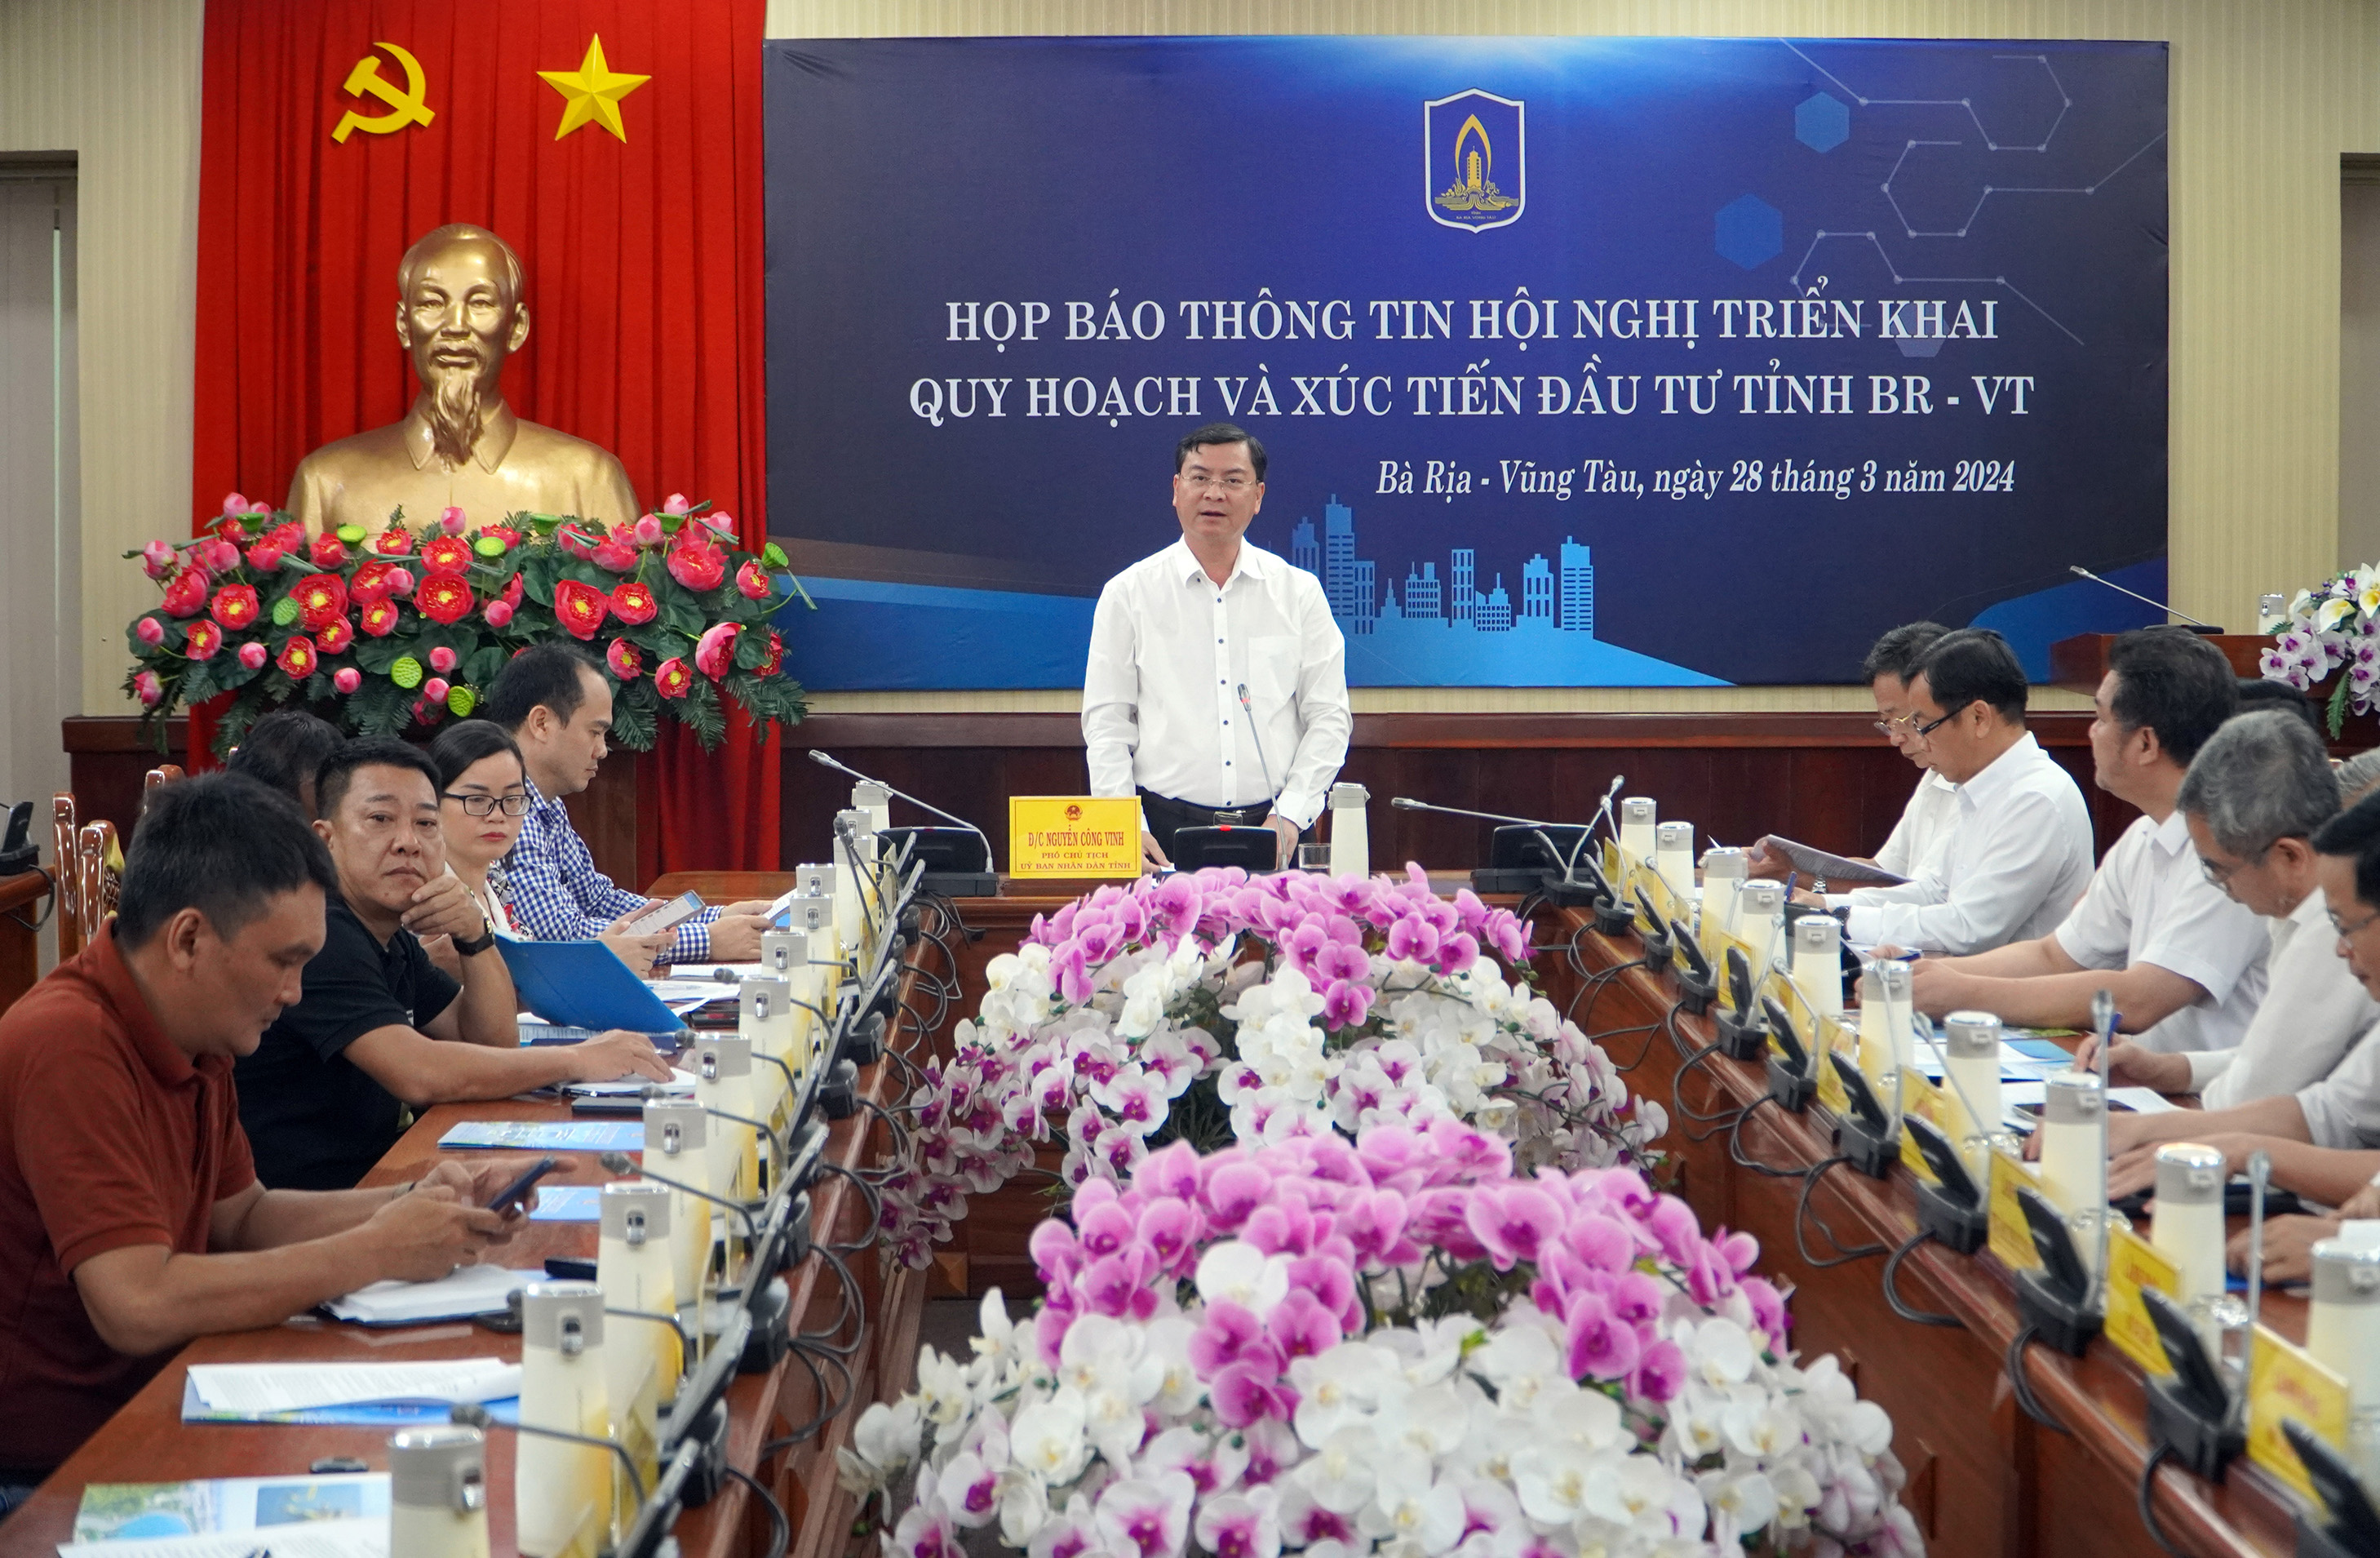 Phó Chủ tịch UBND tỉnh Nguyễn Công Vinh chủ trì họp báo.